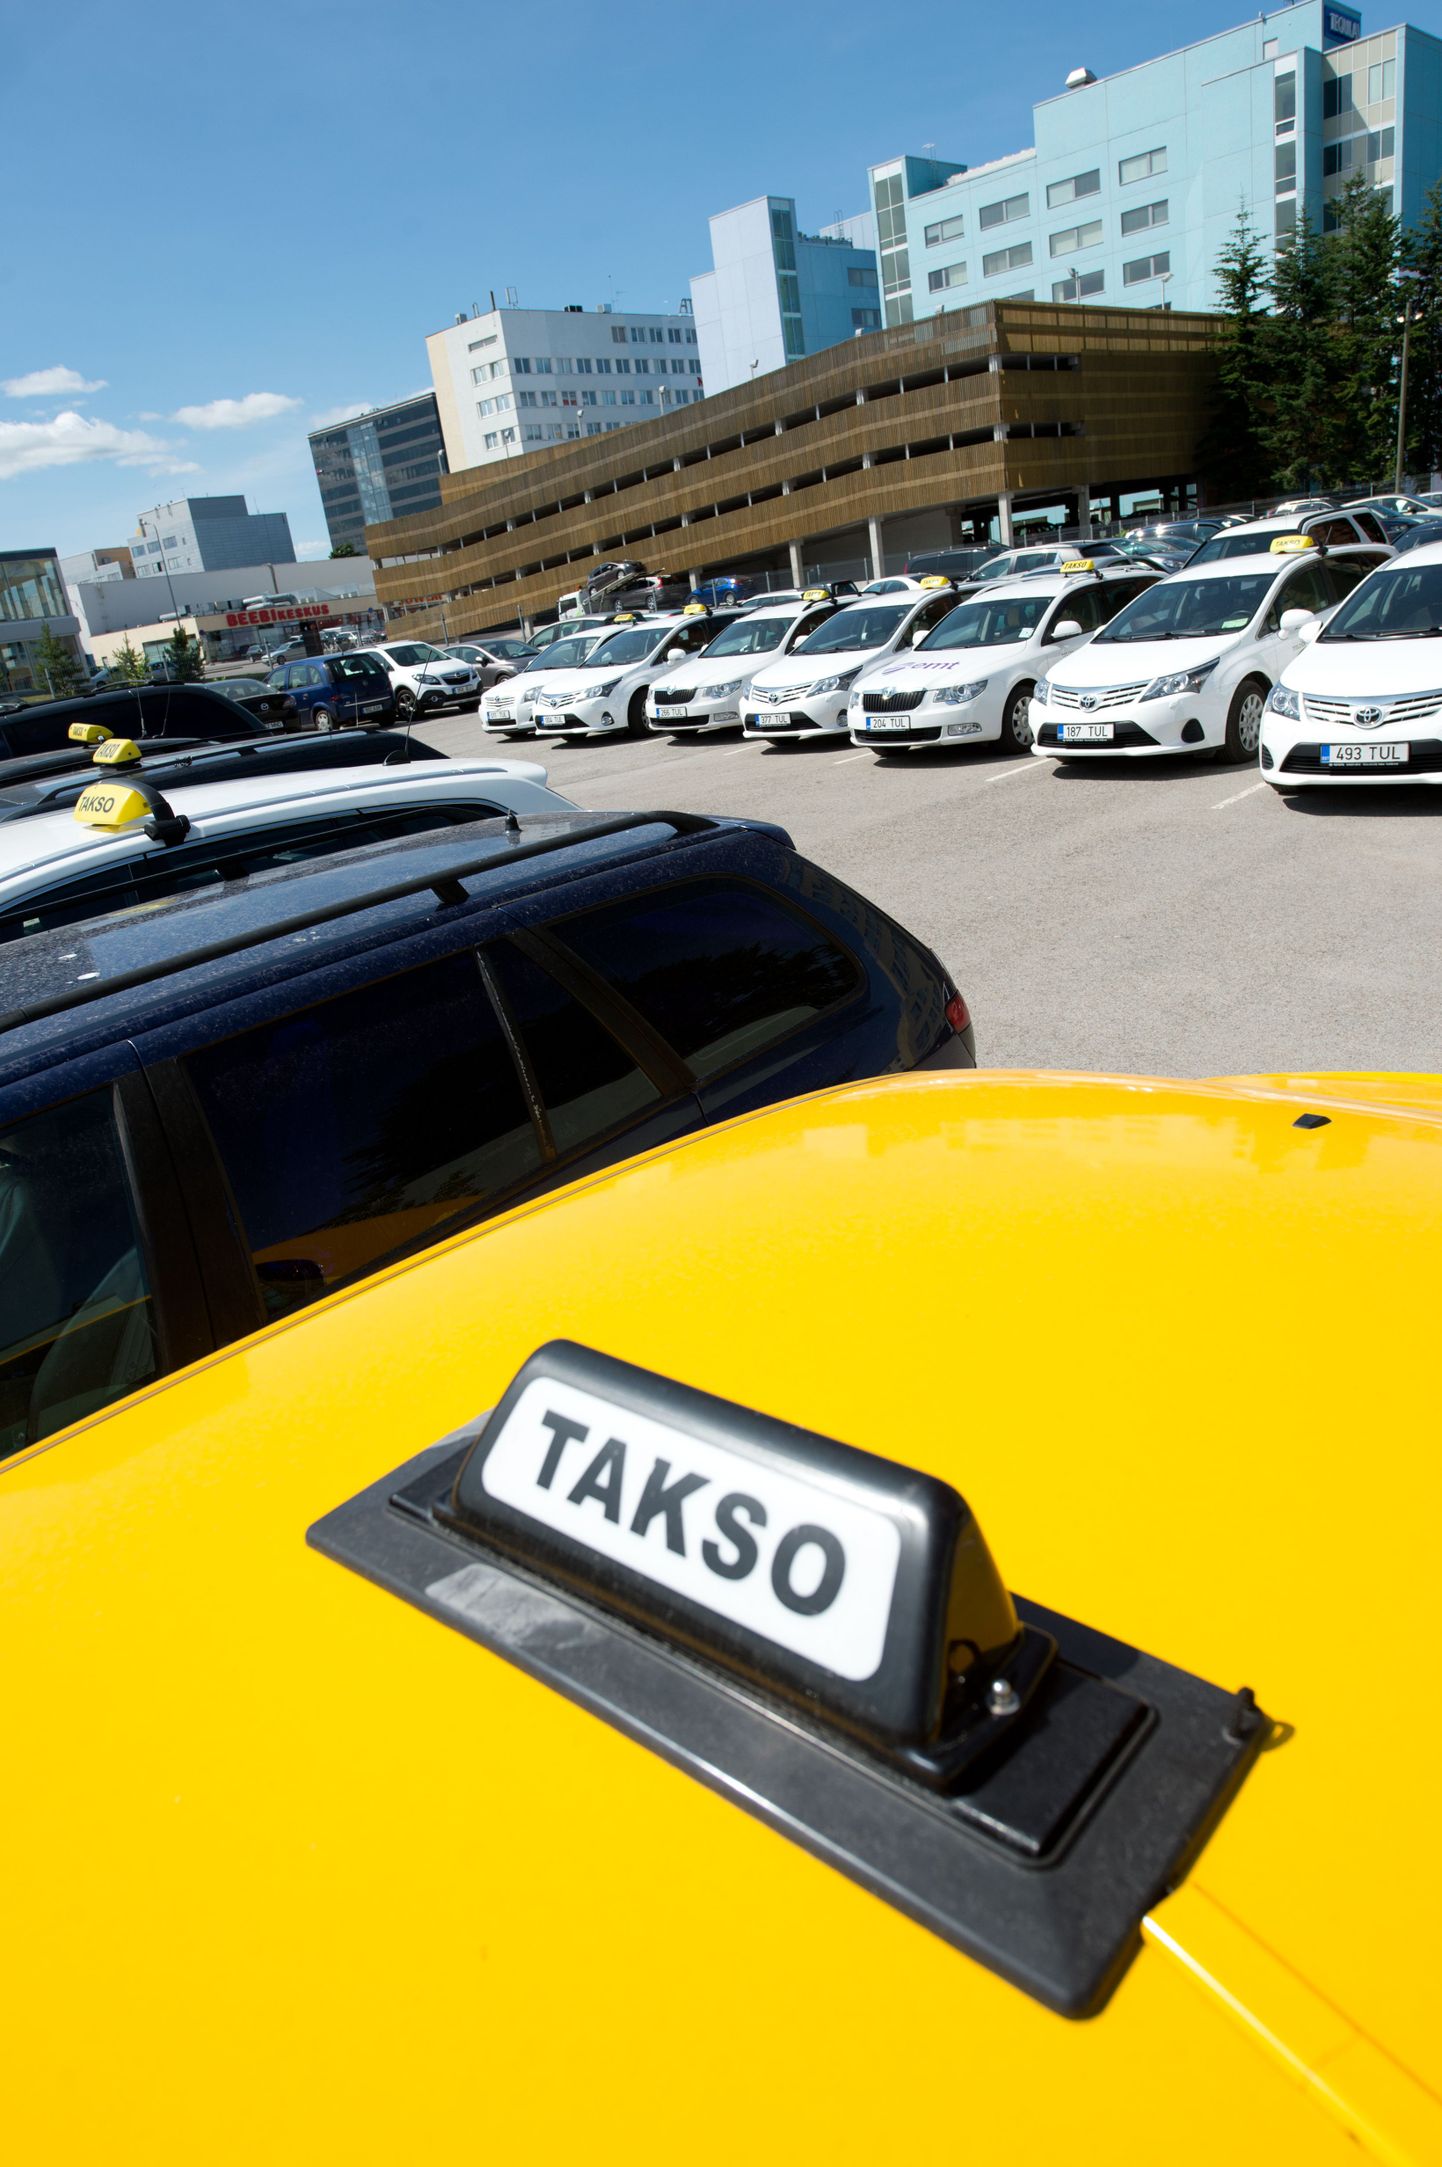 Taksojuhid ei pea teenindajakaardi saamiseks keelenõude täitmist tõendava dokumenti näitama.